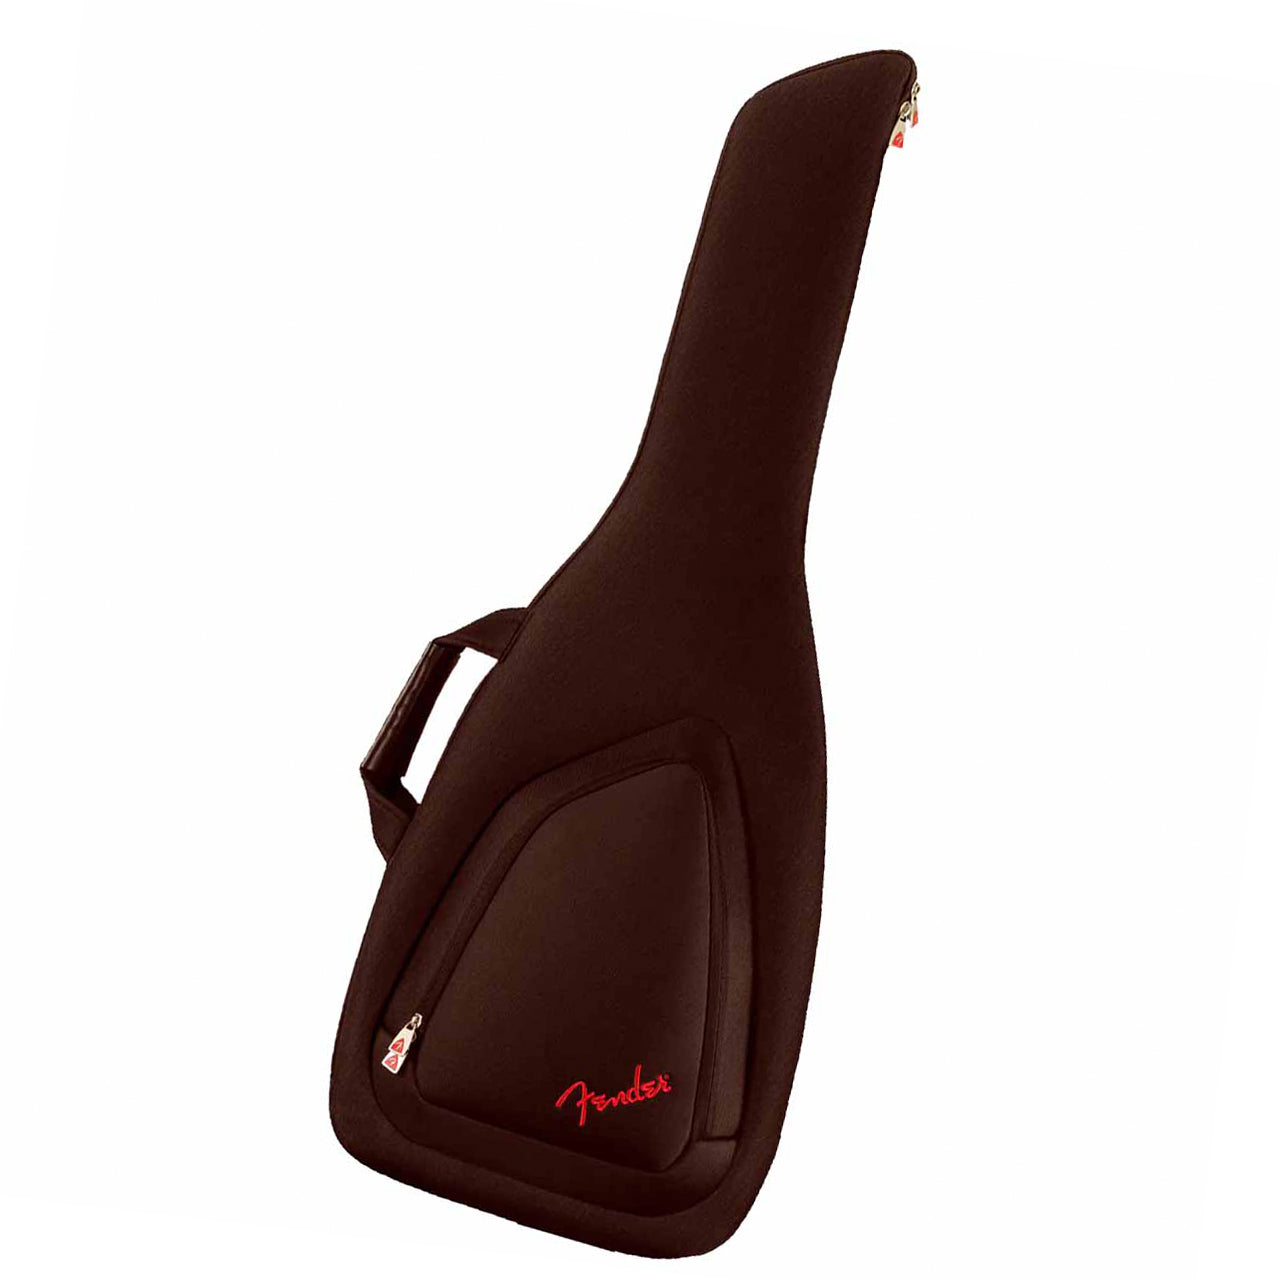 perjudicar Asia Arbitraje Fender FE610 Electric Gig Bag, Oxblood | For Sale | Replay Guitar Exchange